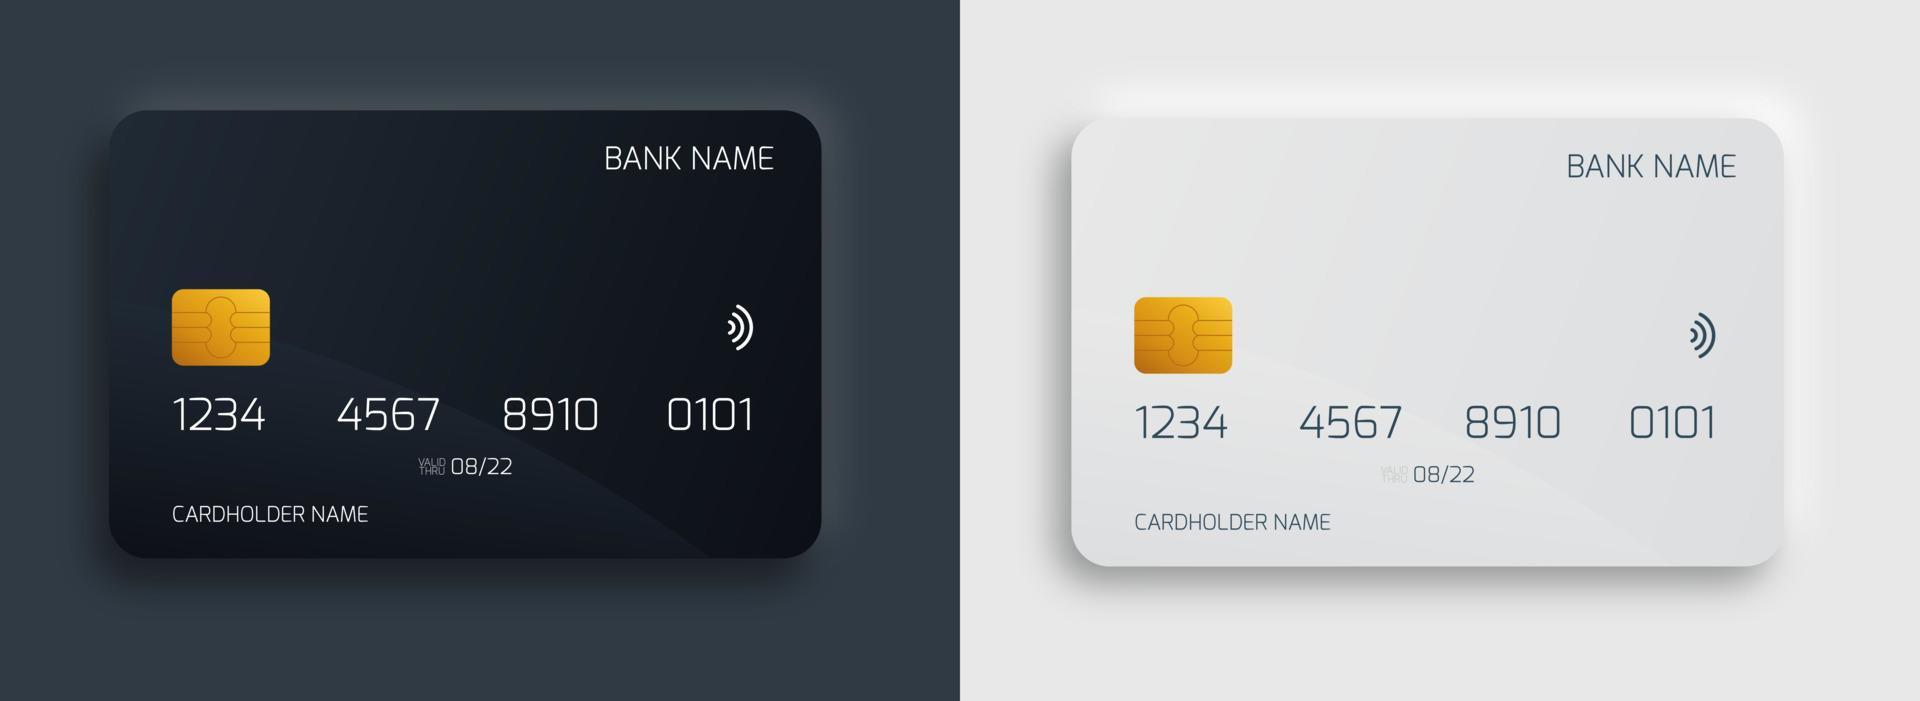 Conjunto de plantillas de diseño de tarjeta bancaria de plástico. maqueta de tarjetas de crédito o débito aisladas con concepto de estilo de color oscuro y claro. vector